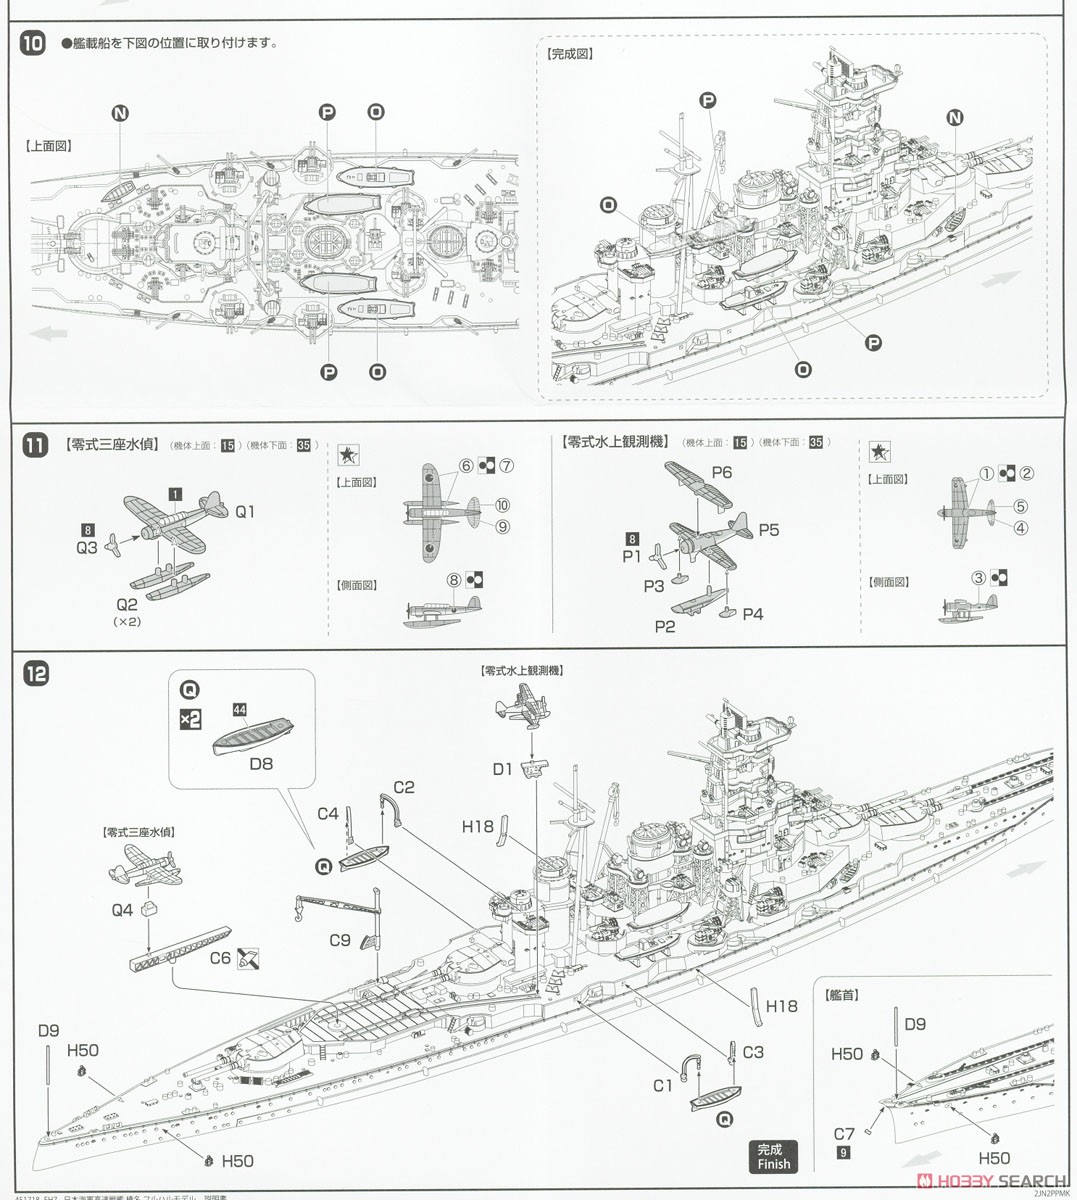 高速戦艦 榛名 フルハルモデル (プラモデル) 設計図6